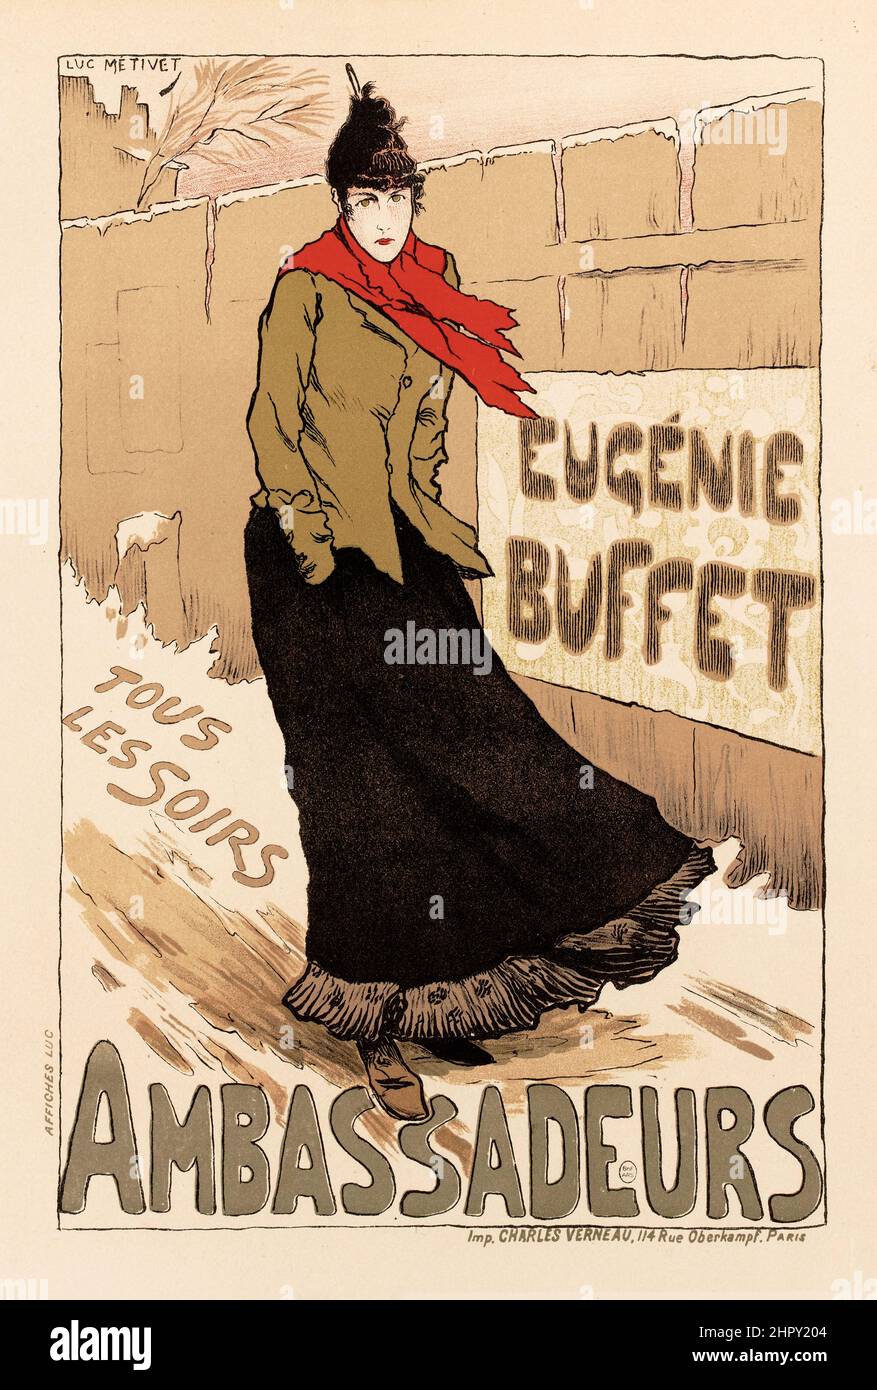 Maitres de l'affiche Vol 1 - Plato 22 - Lucien Metivet - Ambassadeurs. Bufé Eugenie. Tous Les Soirs. 1895. Foto de stock